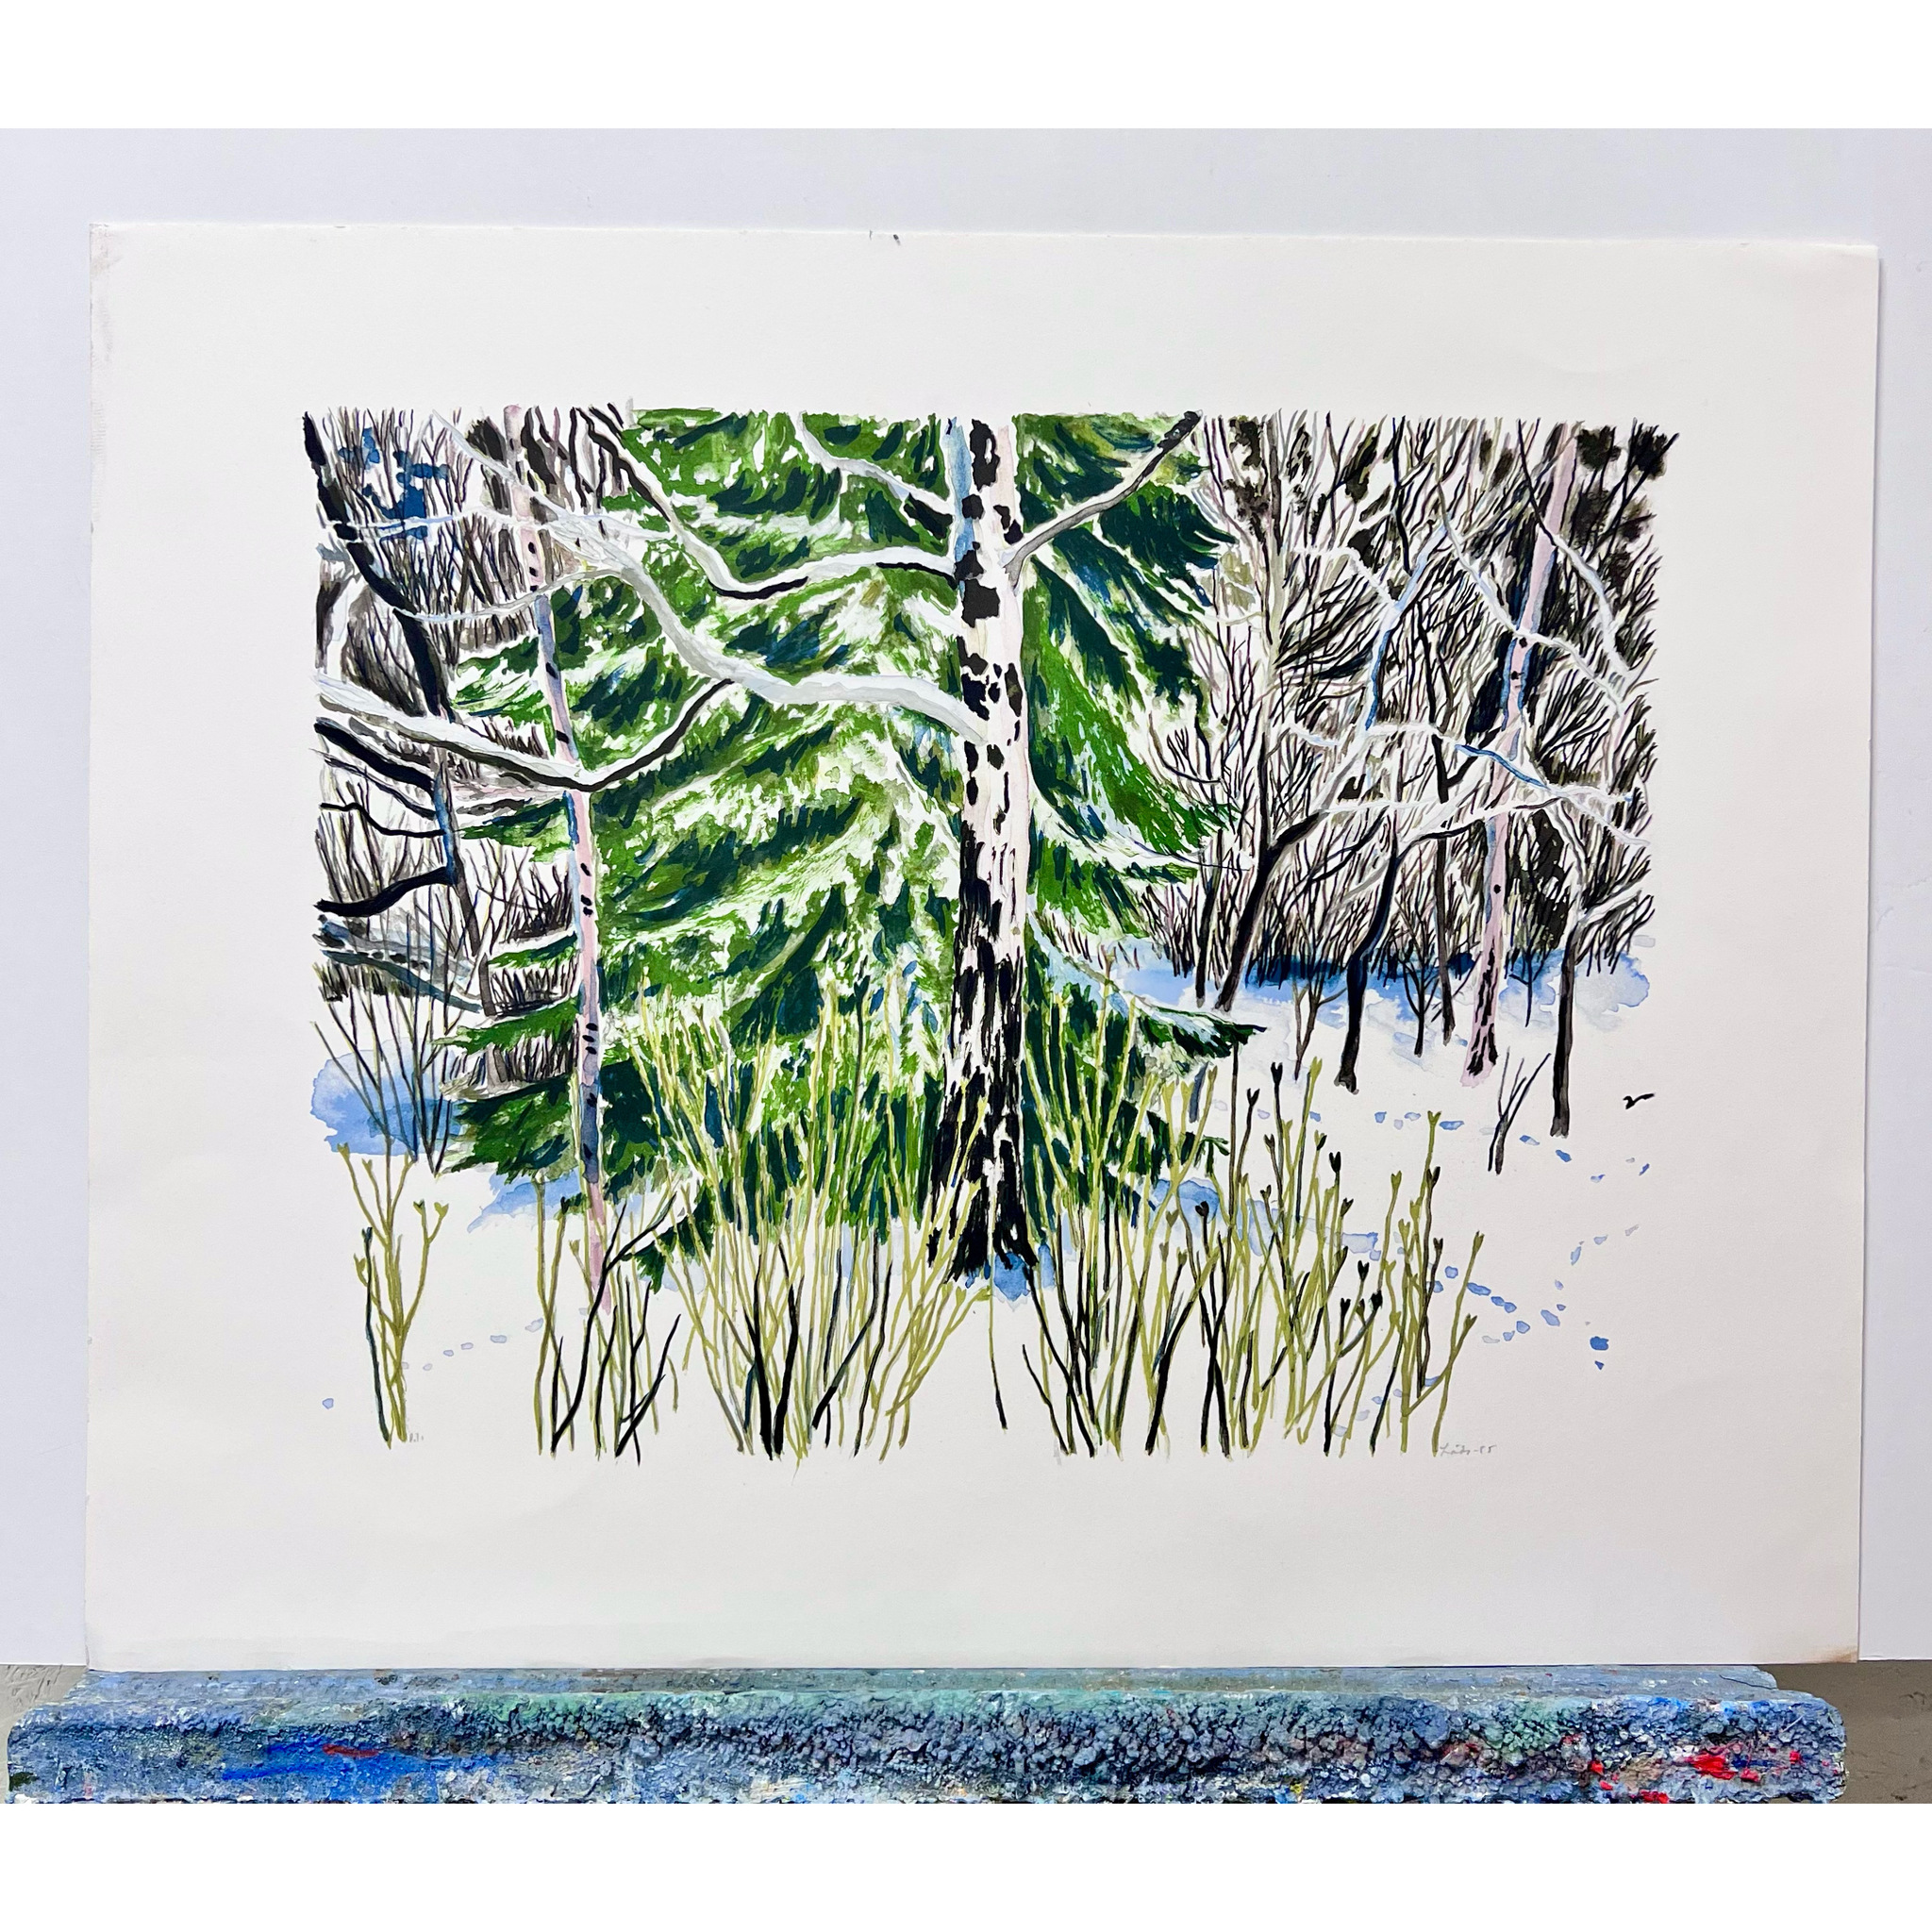 Evy Låås, färglitografi, signerad och markerad P-T  "Spår i snön", bladstorlek 74 x 60 cm.